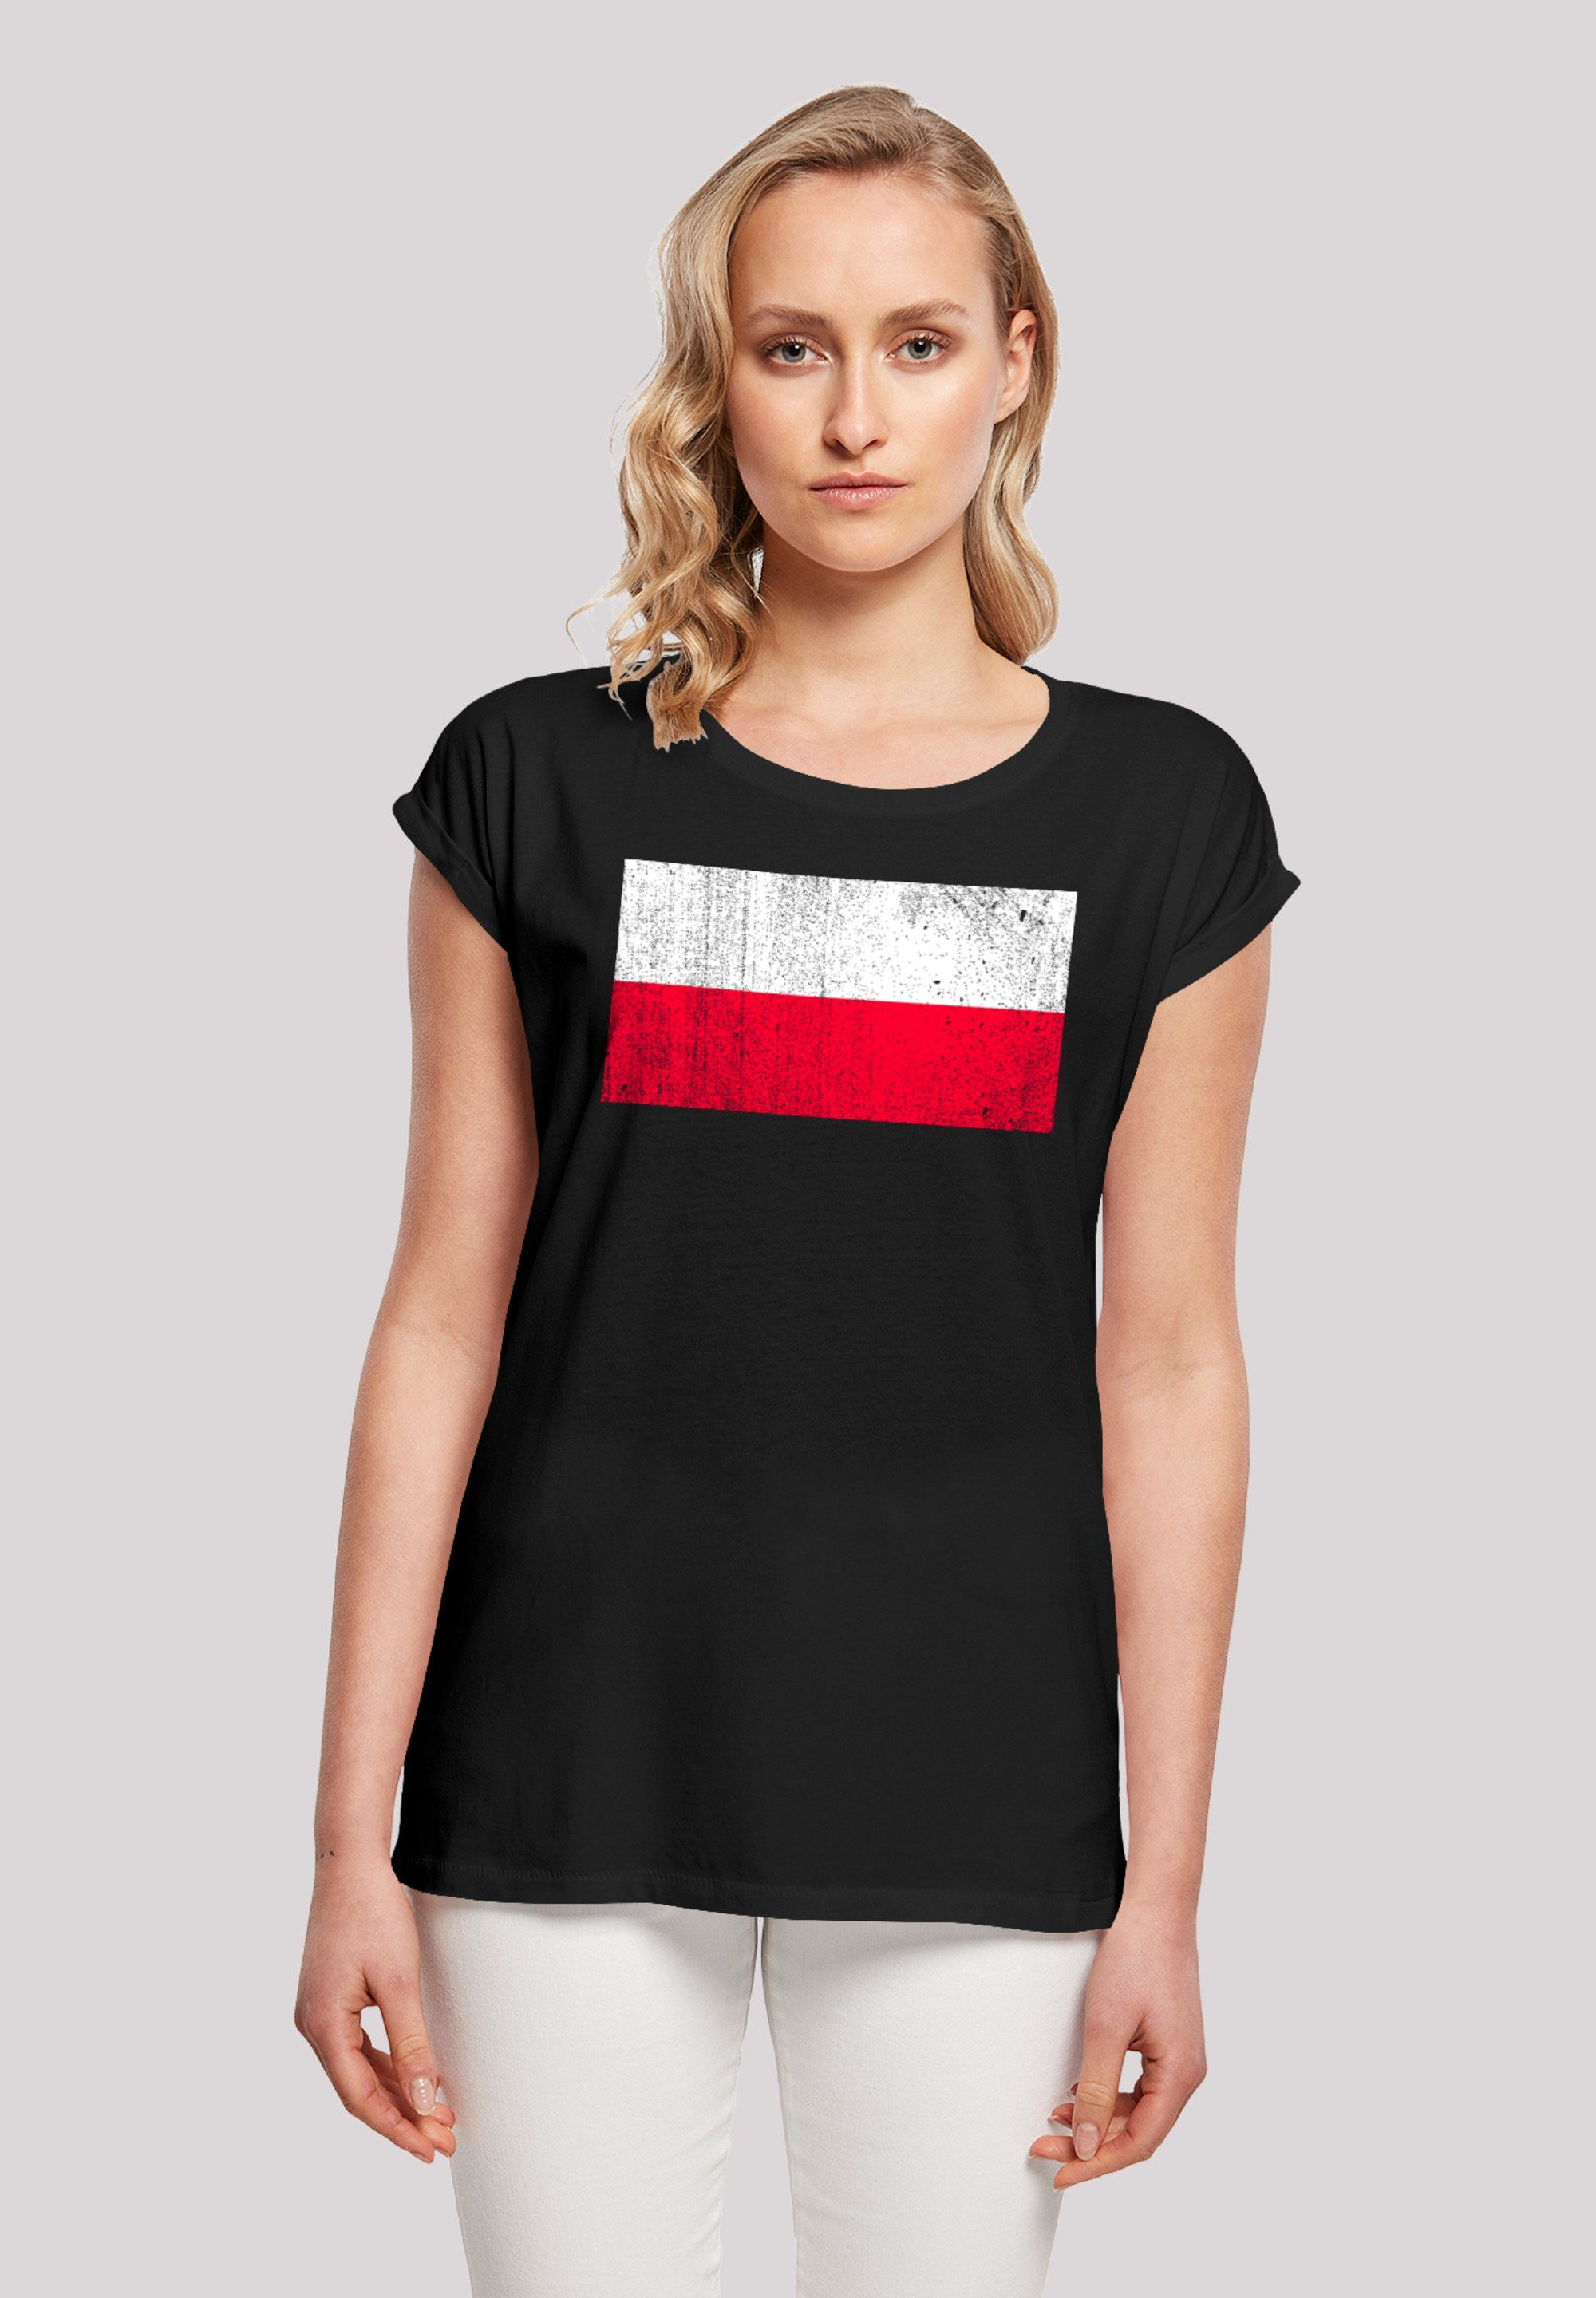 F4NT4STIC T-Shirt Poland Polen und Das 170 cm ist distressed trägt Print, groß Flagge M Model Größe